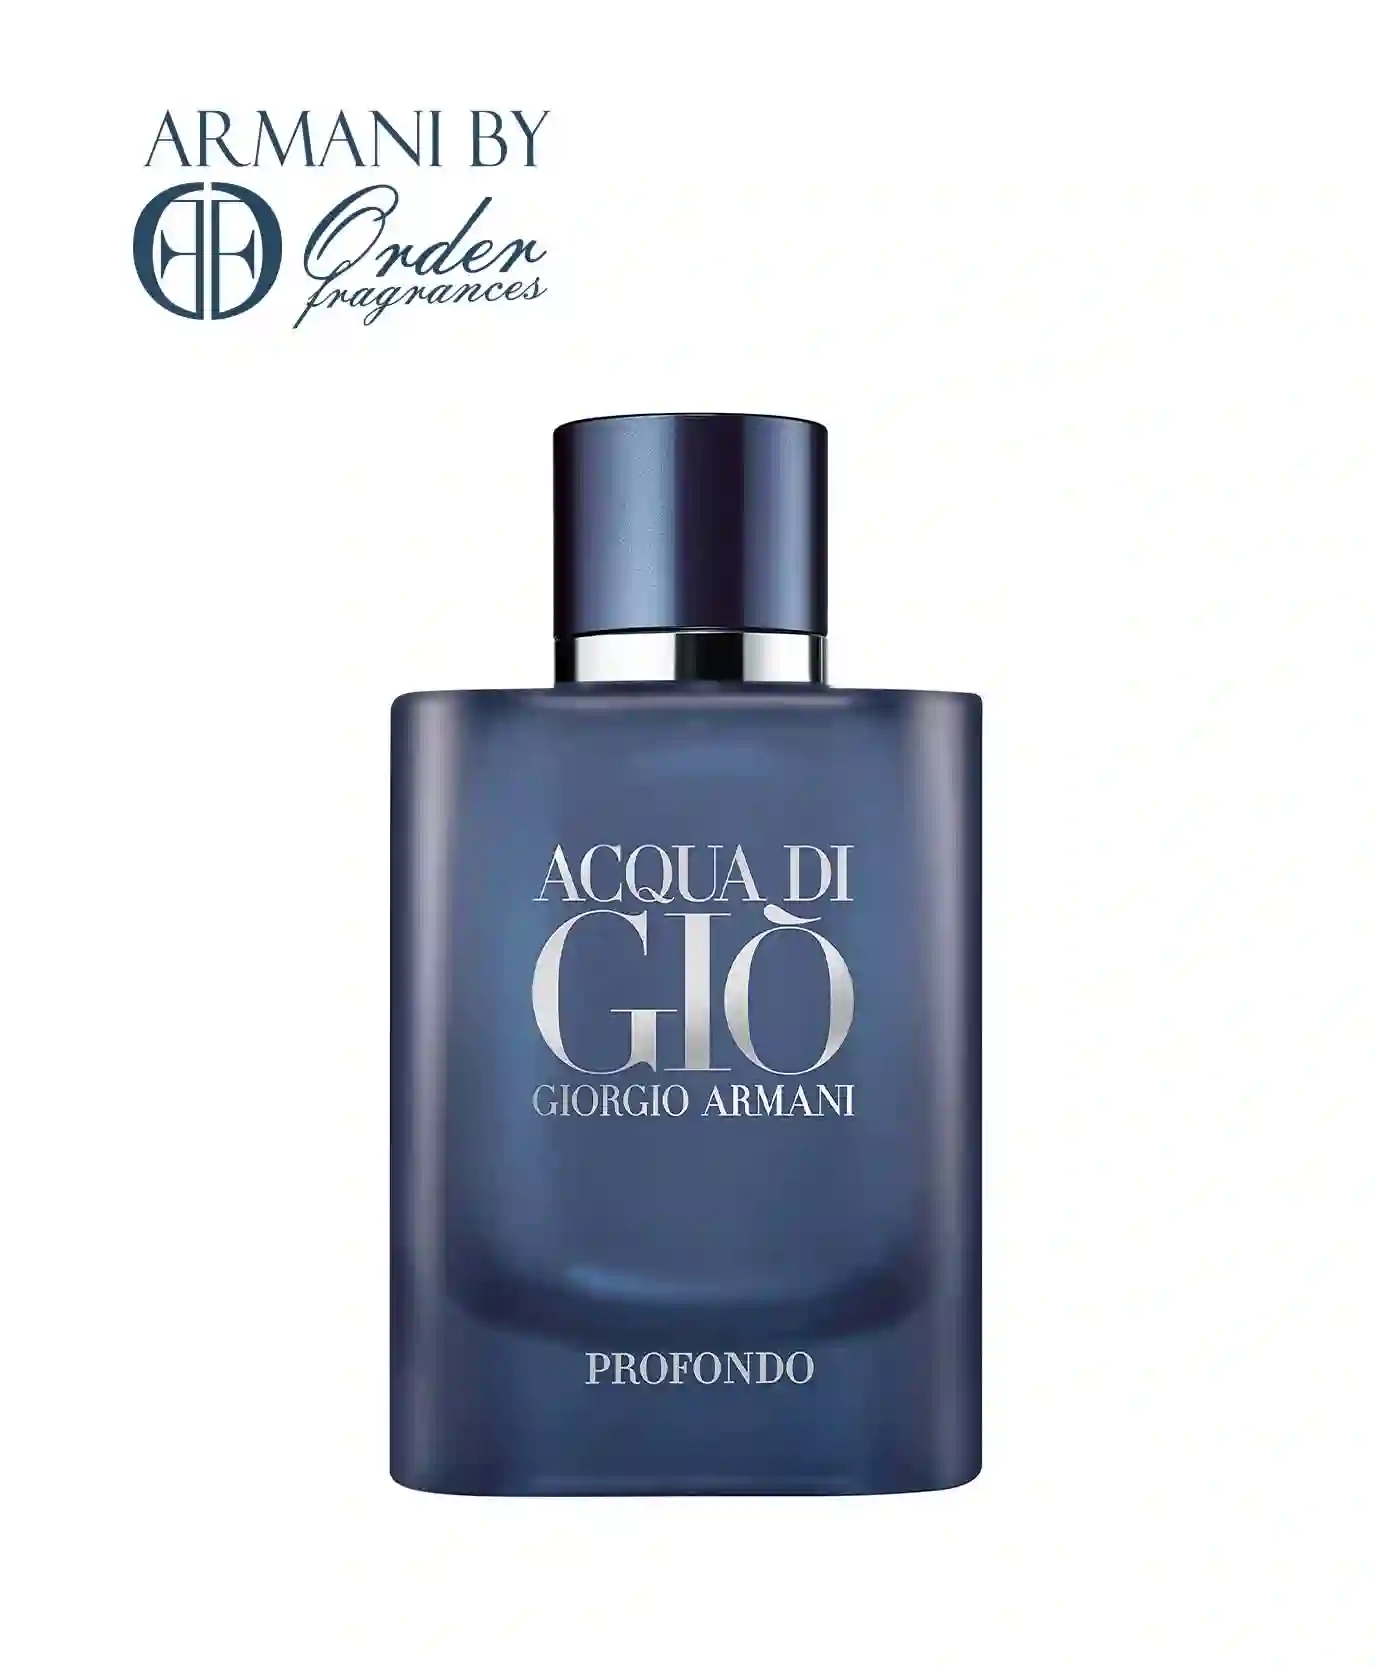 Acqua di Gio Profondo by Giorgio Armani EDP Perfume